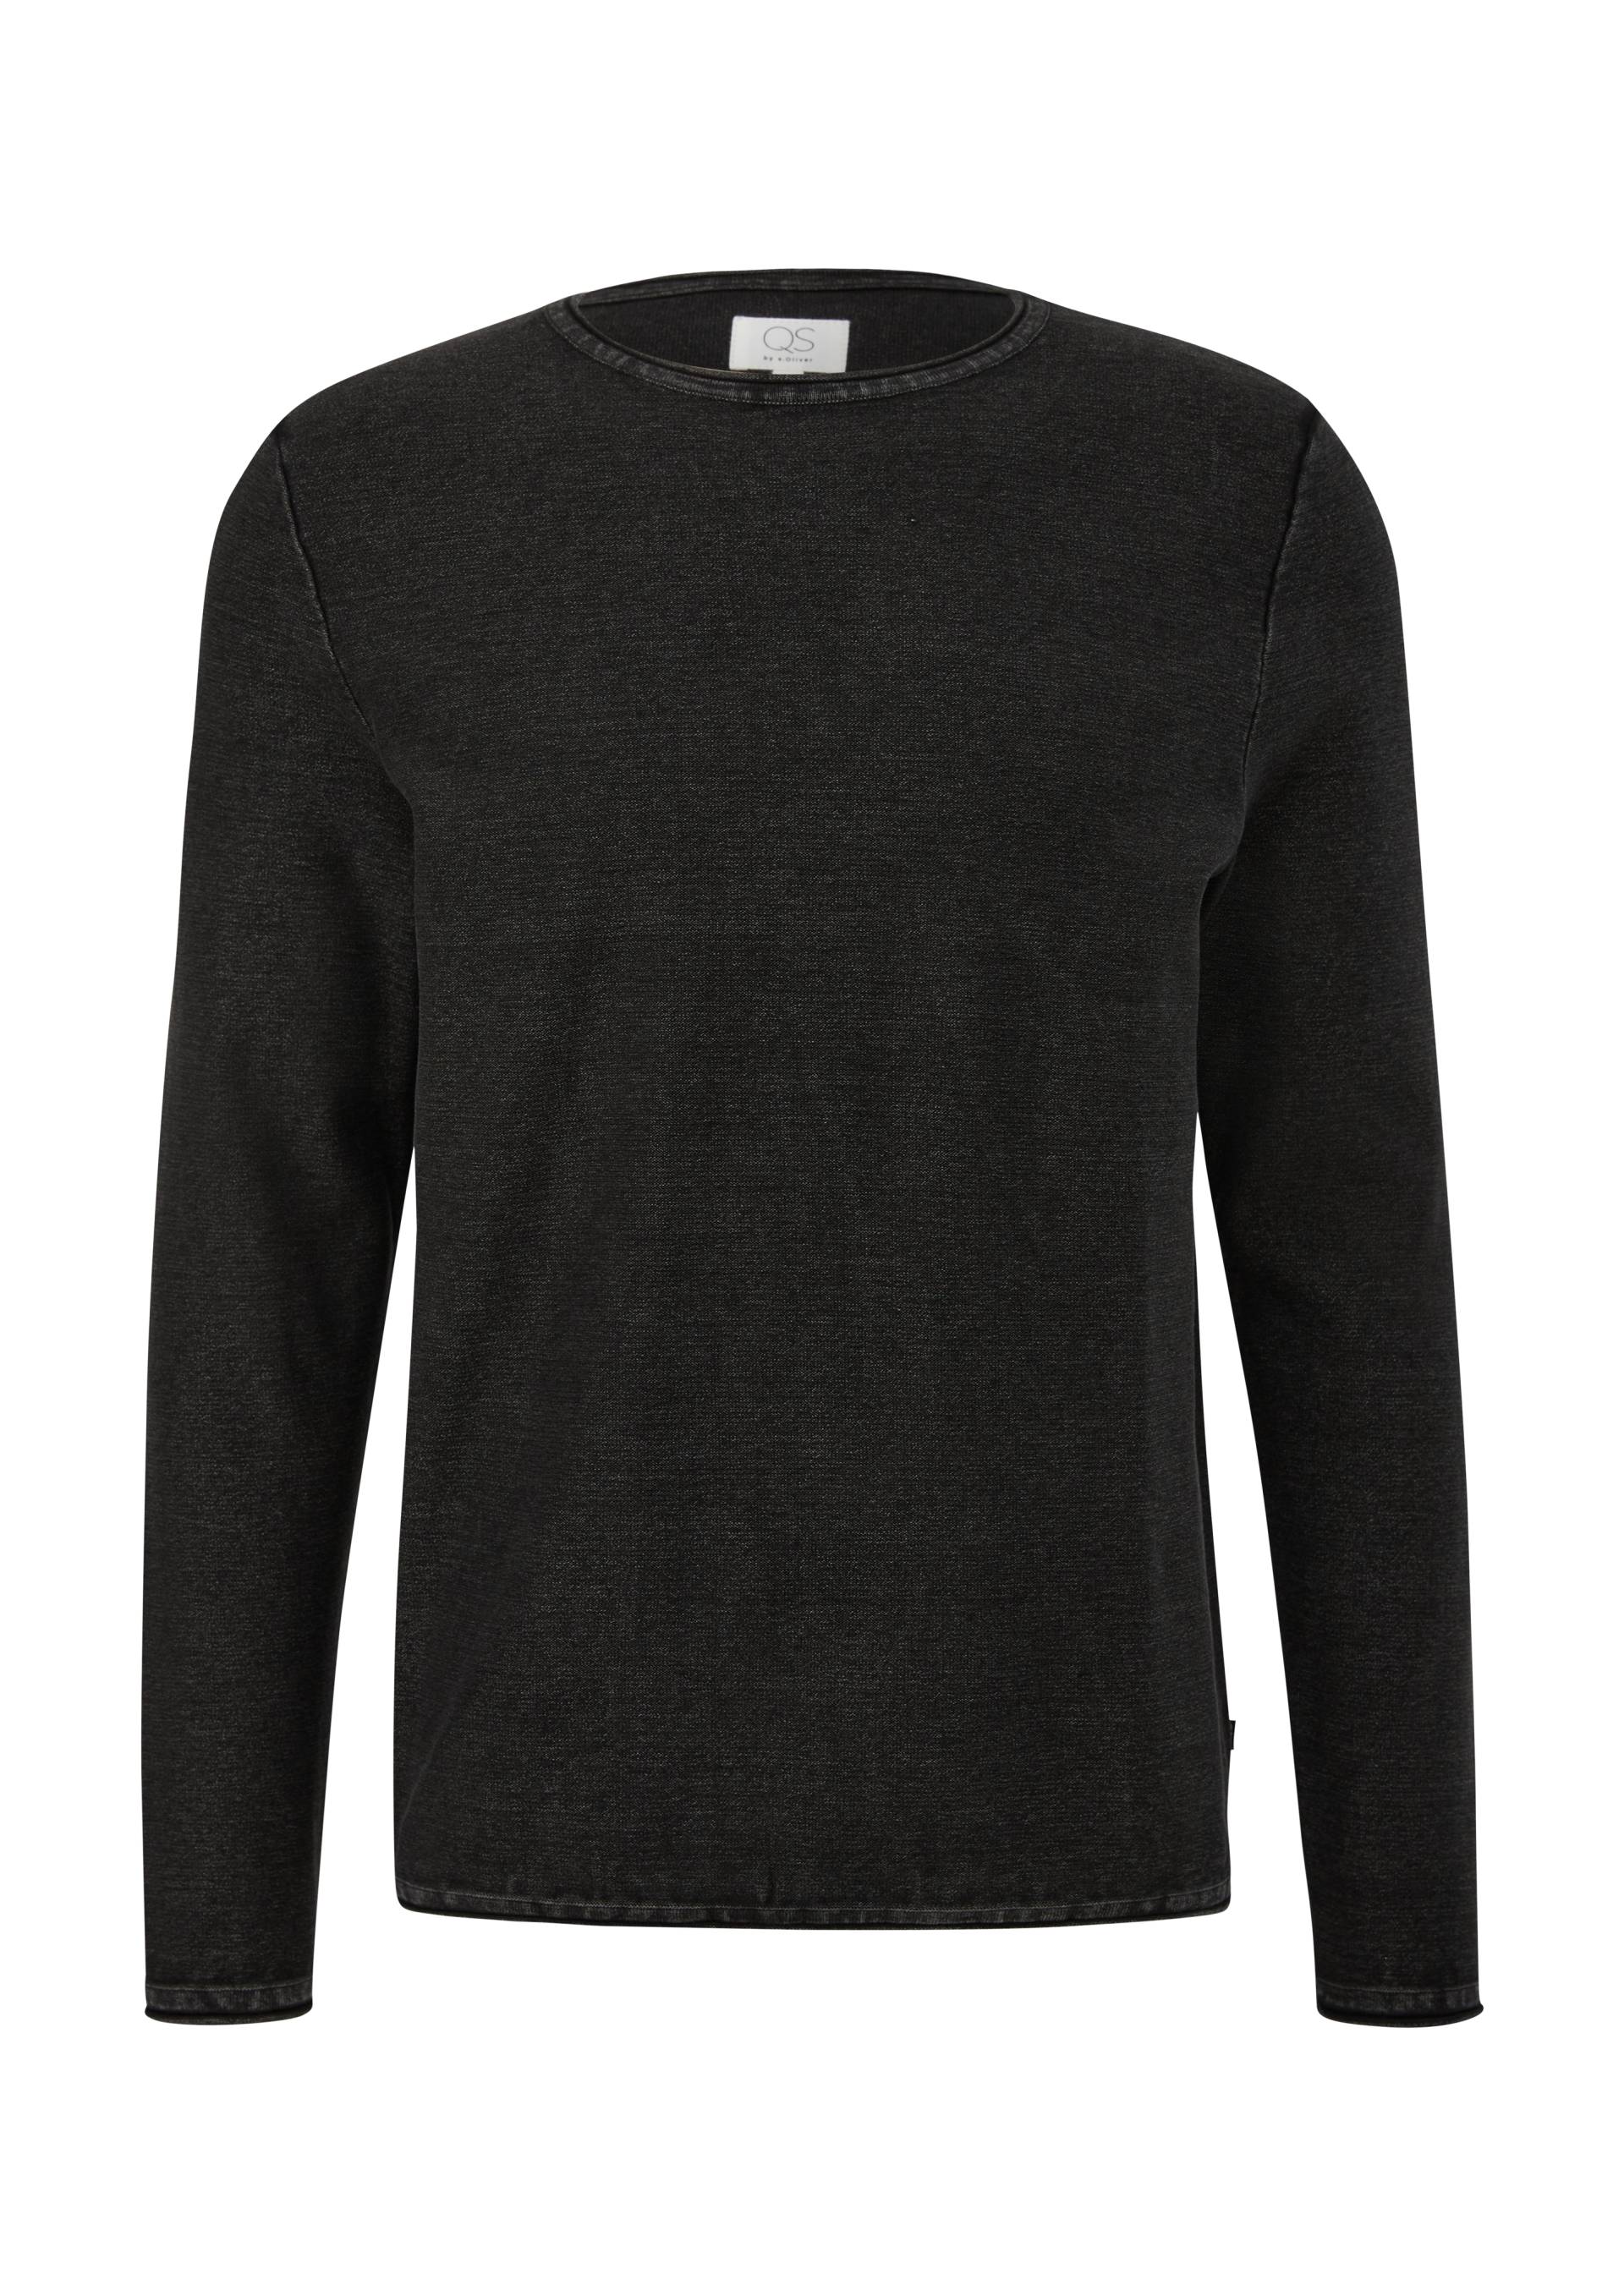 QS - Pullover mit Garment Dye, Herren, schwarz von QS